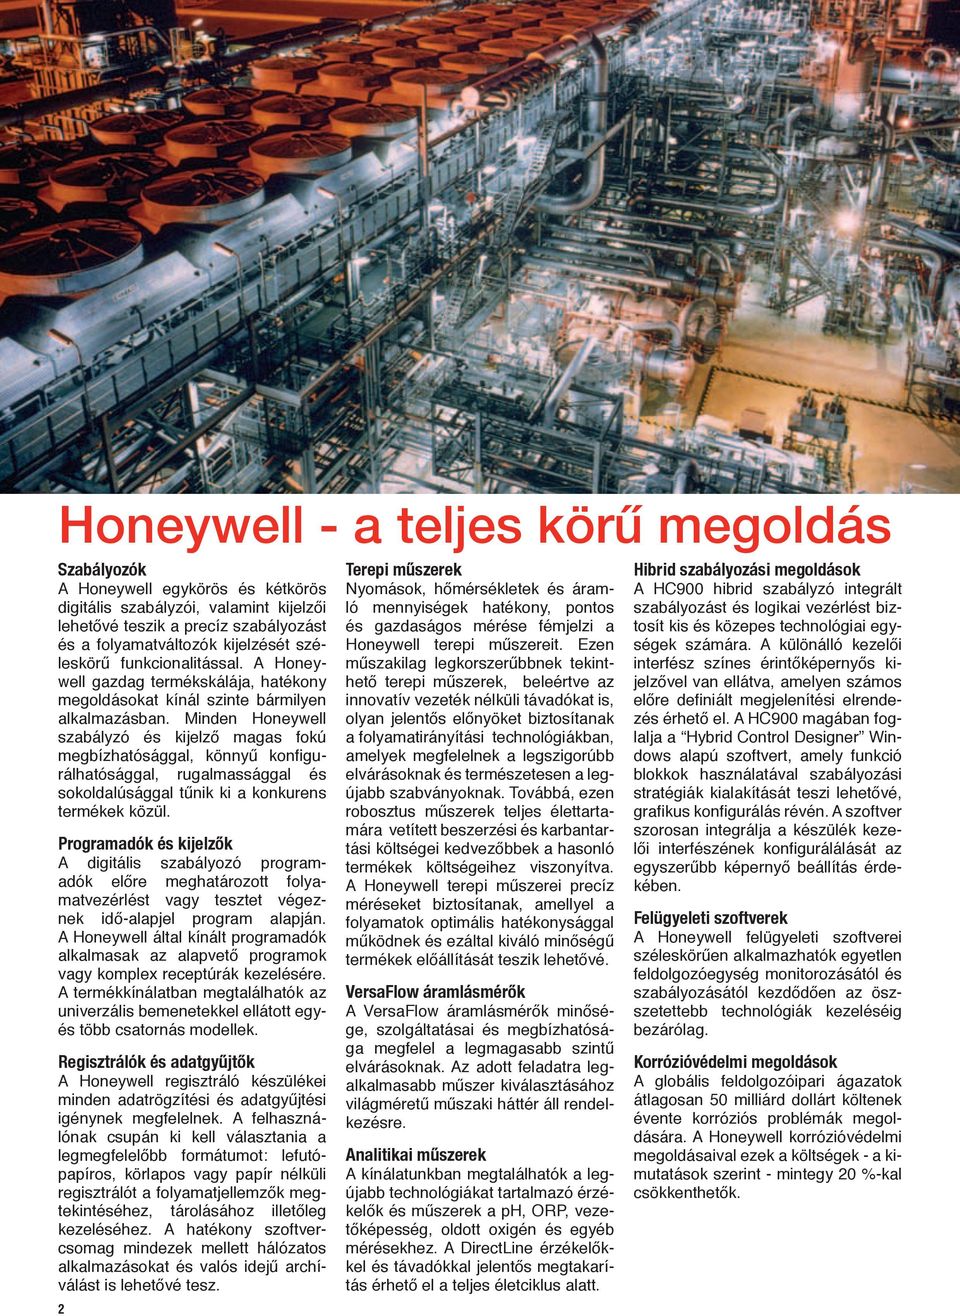 Minden Honeywell szabályzó és kijelző magas fokú megbízhatósággal, könnyű konfigurálhatósággal, rugalmassággal és sokoldalúsággal tűnik ki a konkurens termékek közül.